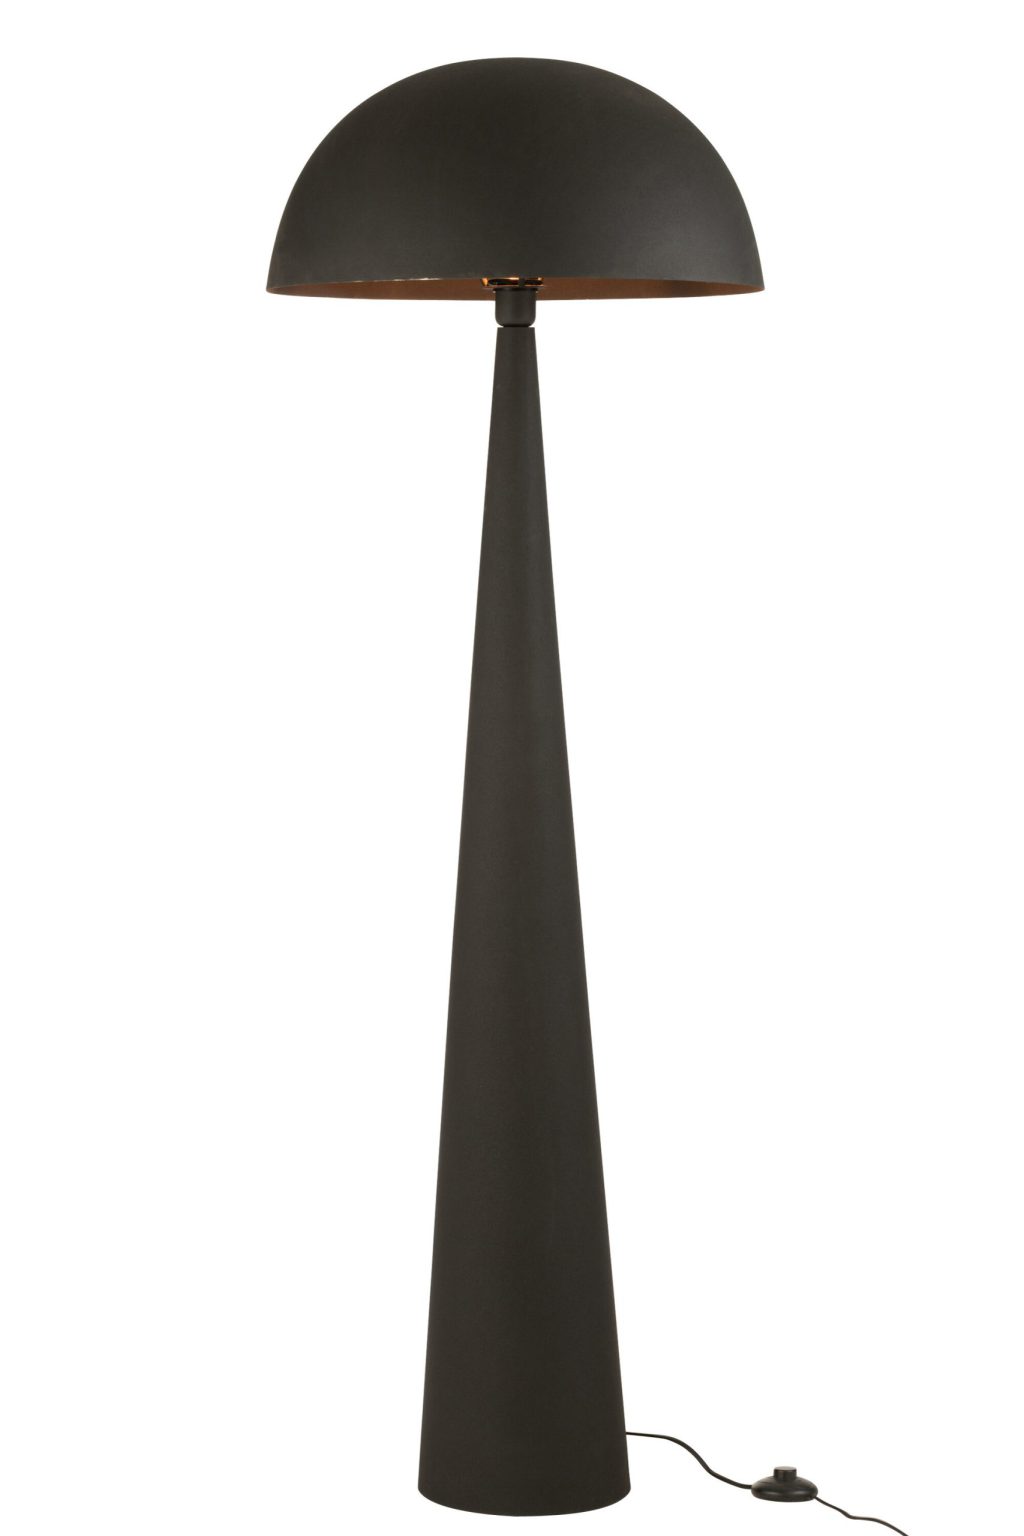 moderne-zwarte-vloerlamp-bolle-kap-jolipa-mushroom-33158-2